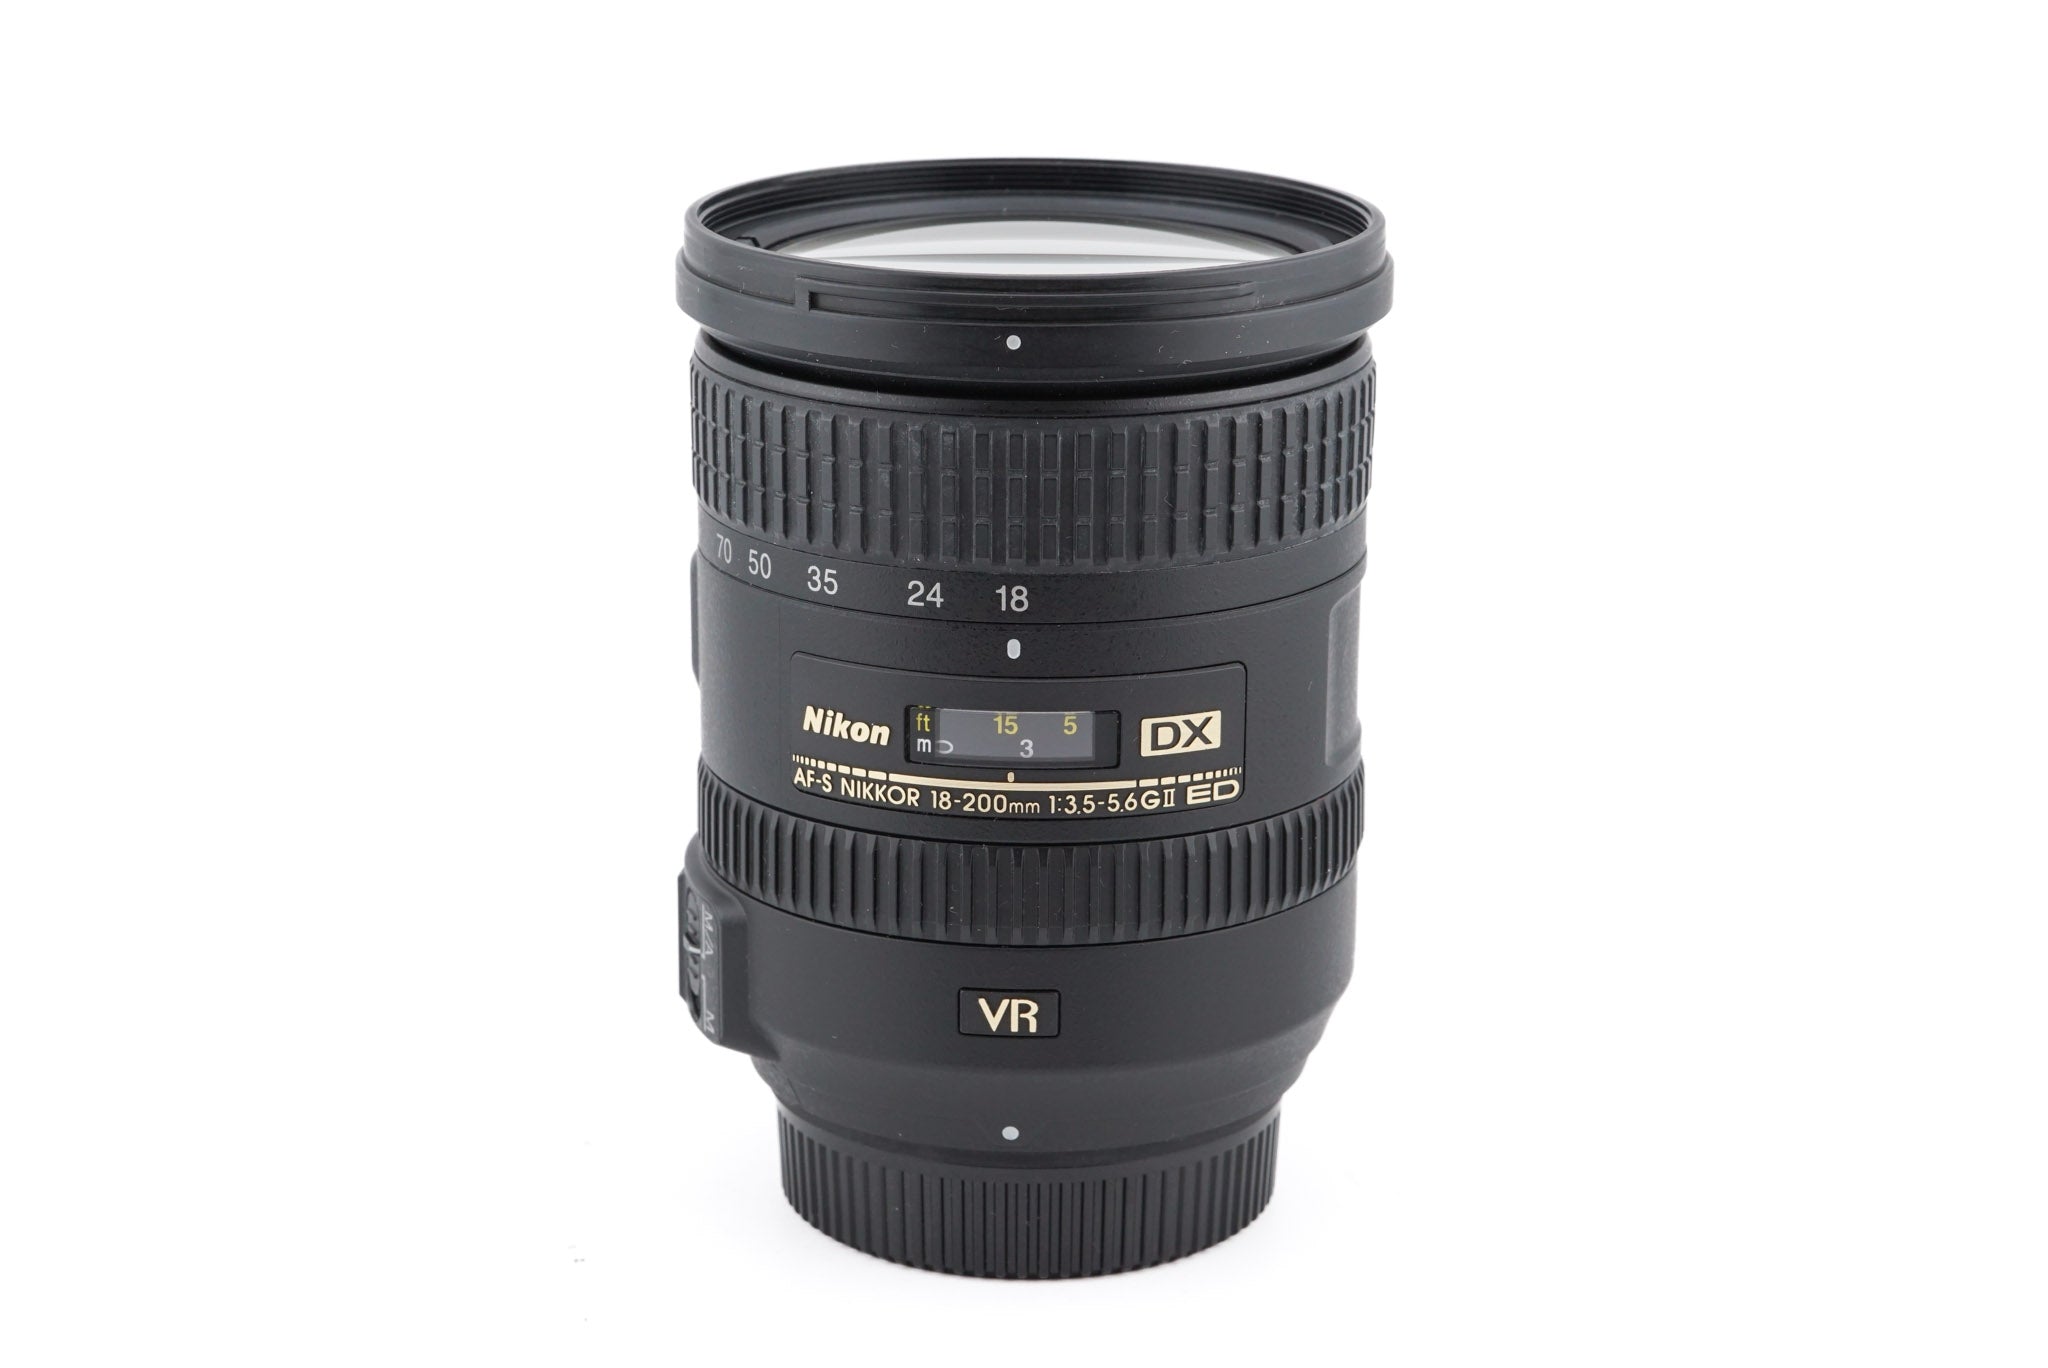 Nikon 18-200mm f3.5-5.6 G ED VR II AF-S Nikkor - Lens